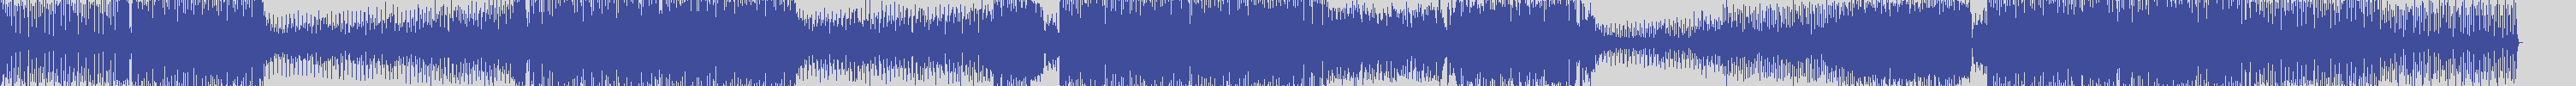 suxess [SX023A] Dyson Kellerman - Don't You Leave Me [Original Mix] audio wave form